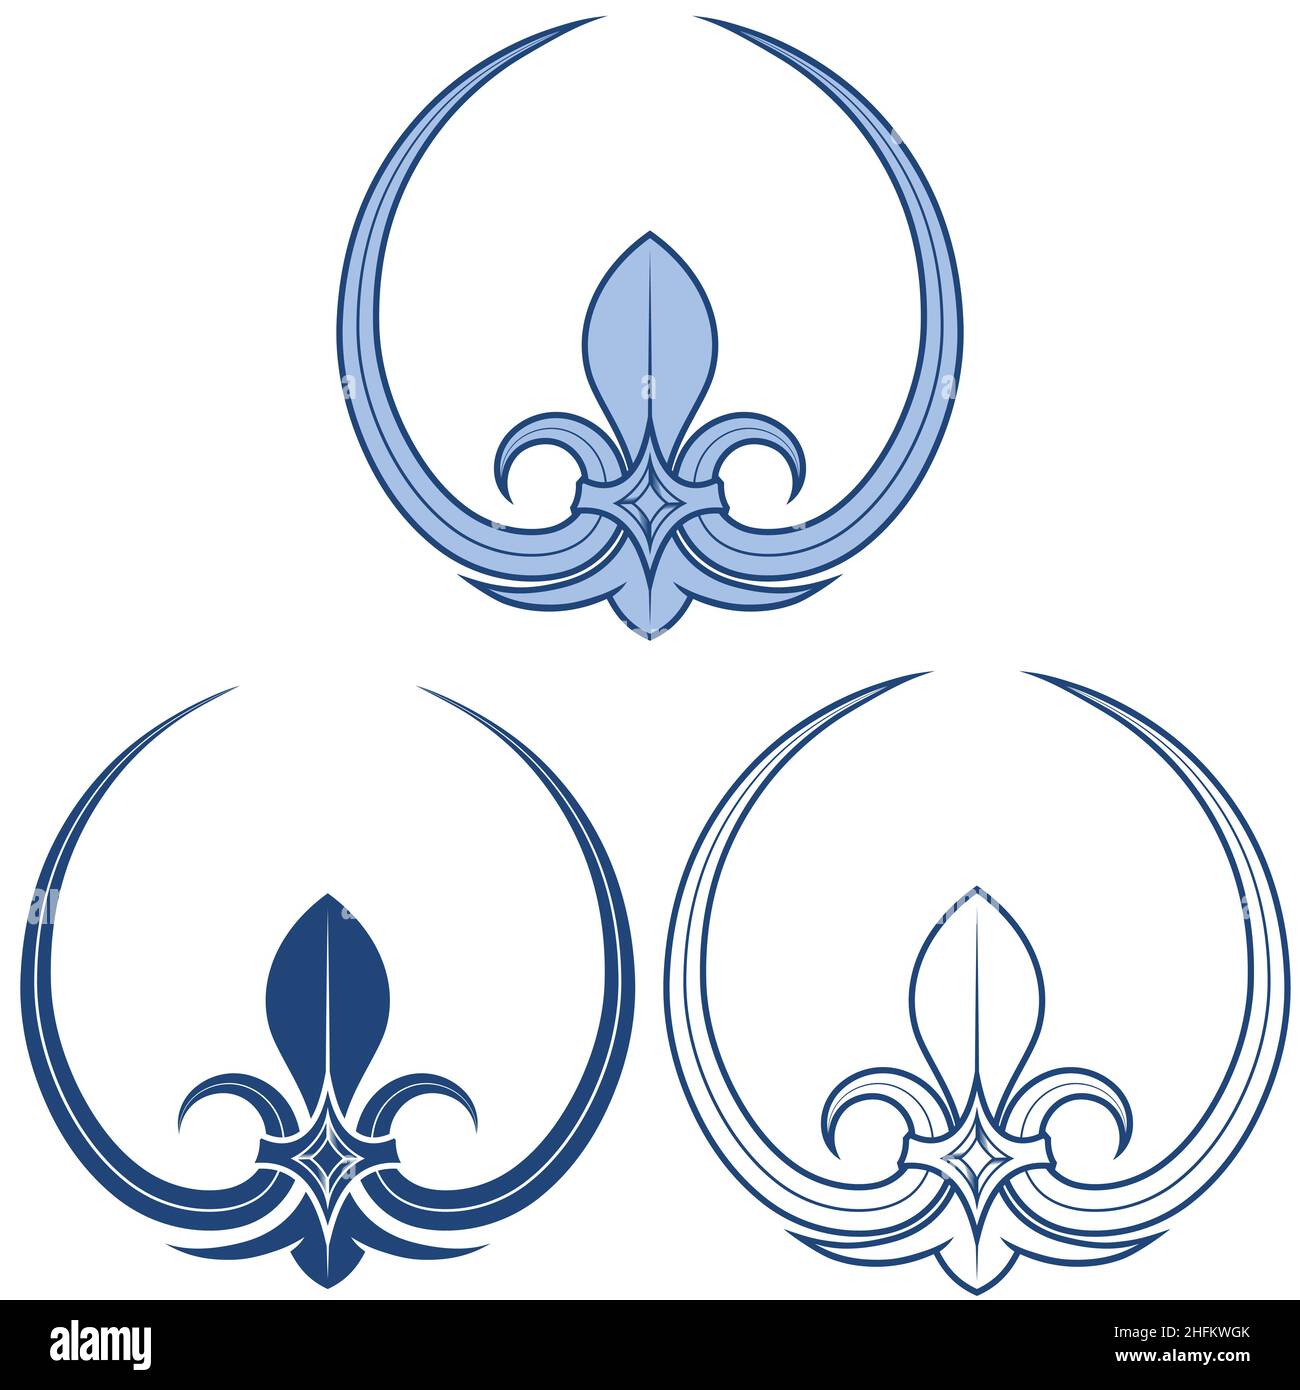 Fleur lis vector design, représentation de la fleur de lis, symbole utilisé dans l'héraldique médiévale Illustration de Vecteur